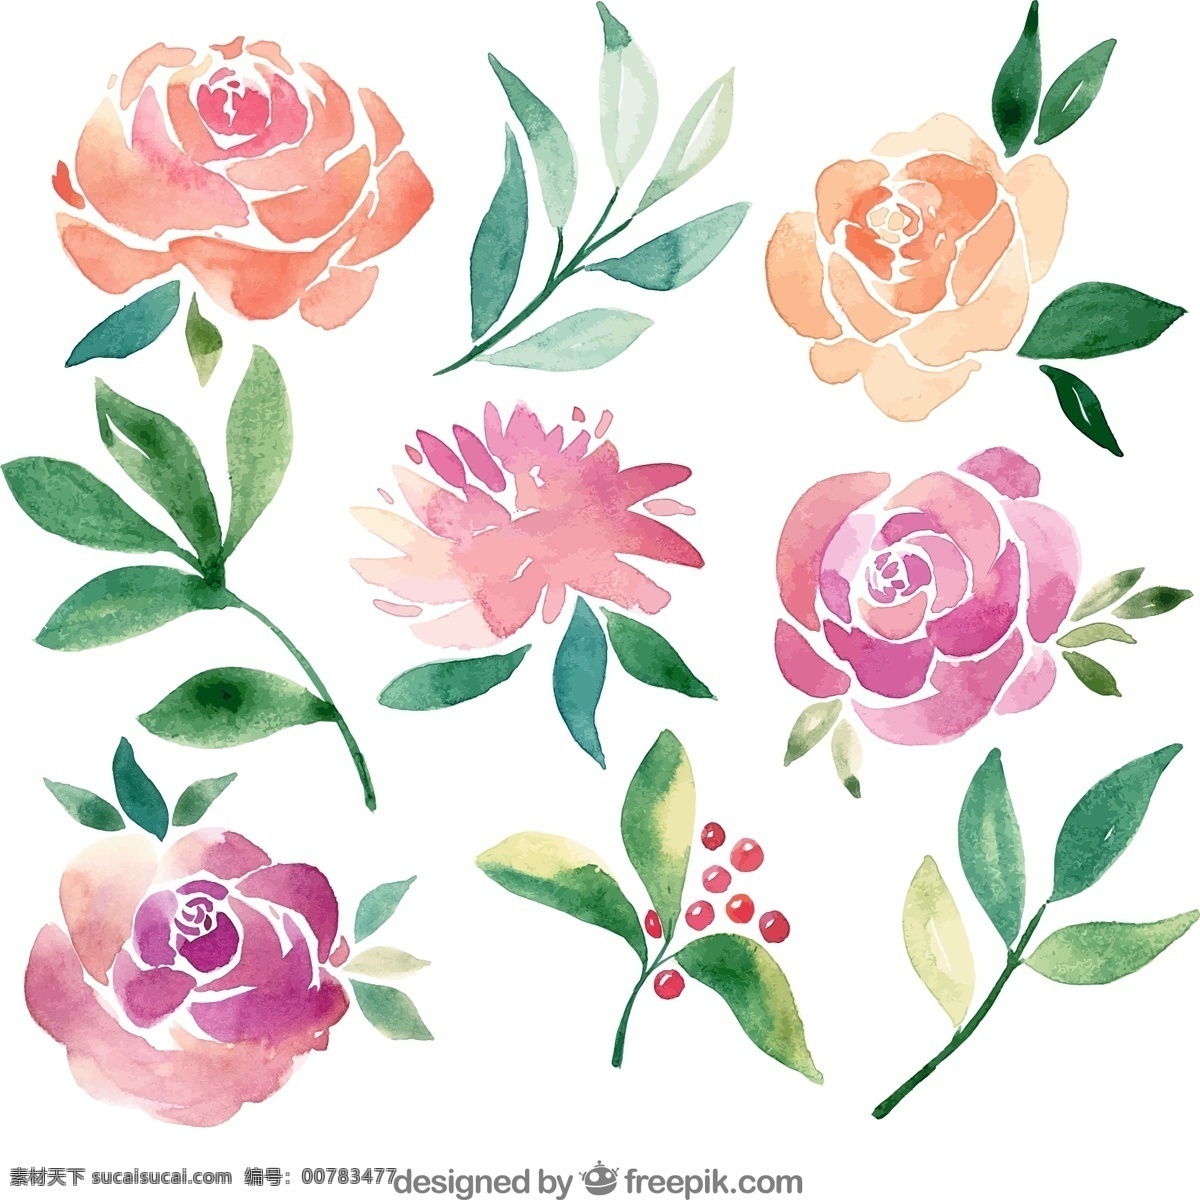 水彩 绘 花卉 叶子 玫瑰花 矢量图 矢量 高清图片